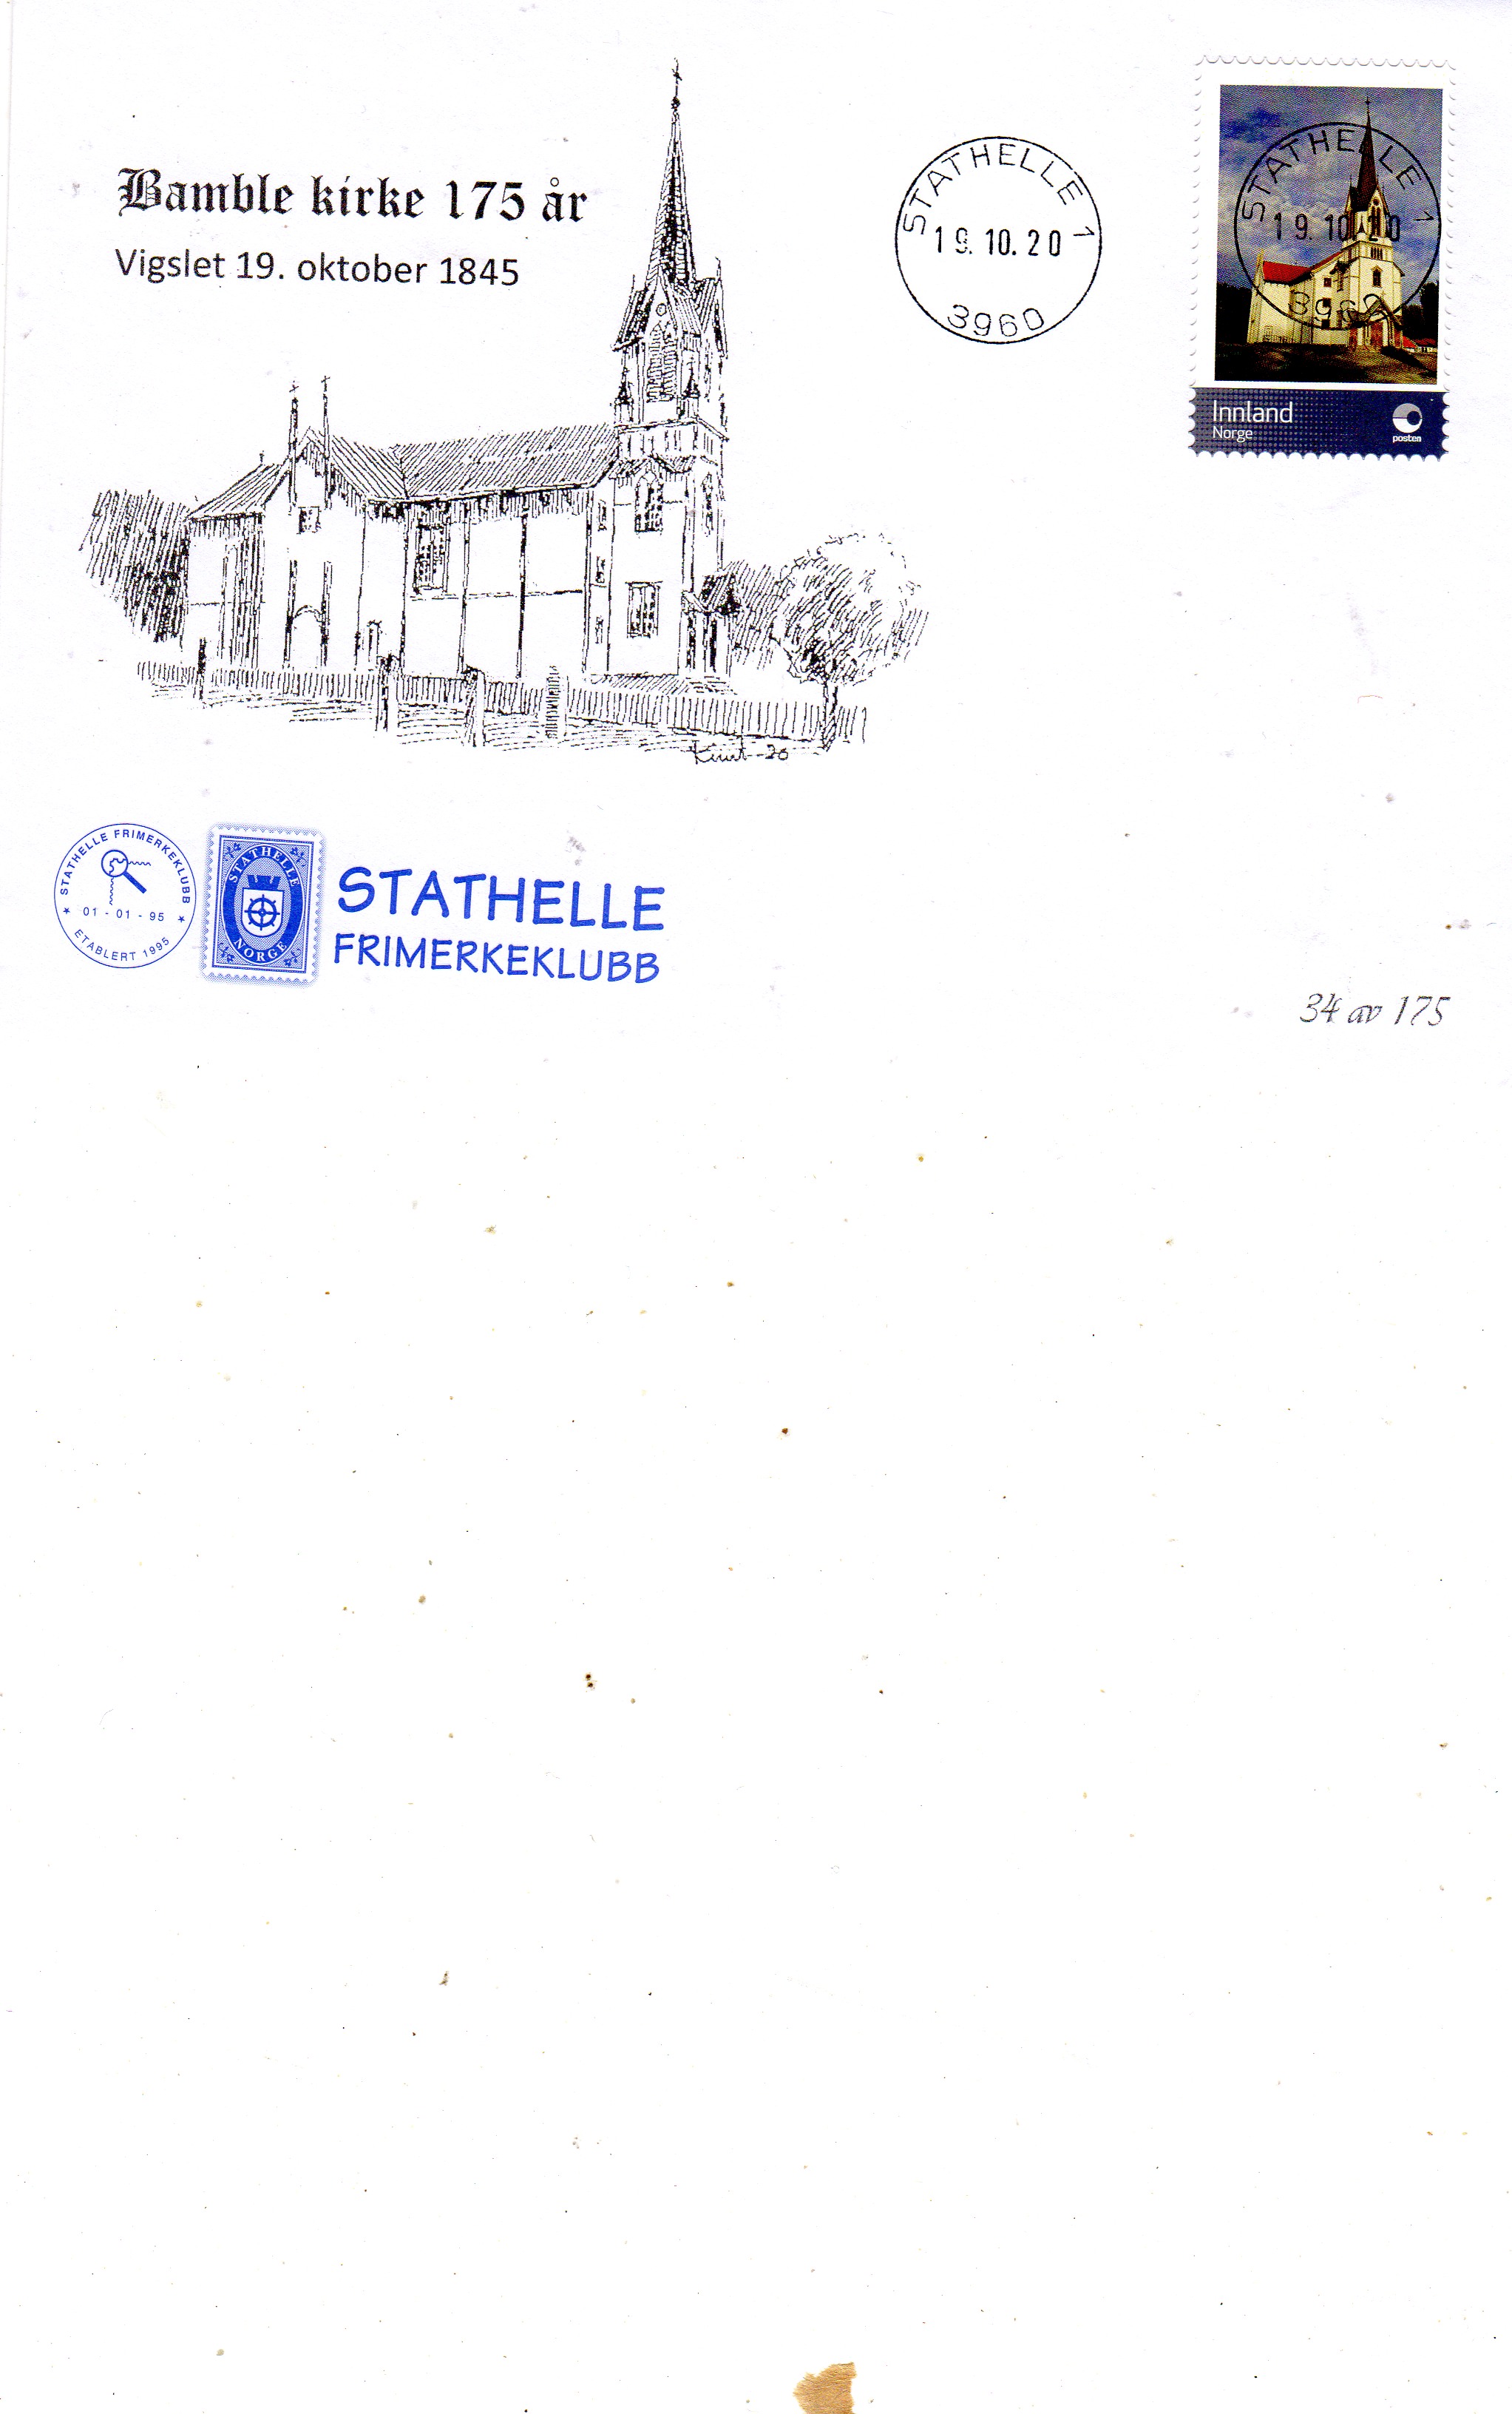 Bamble kirke 175 år st Stathelle 2020 34 av 175